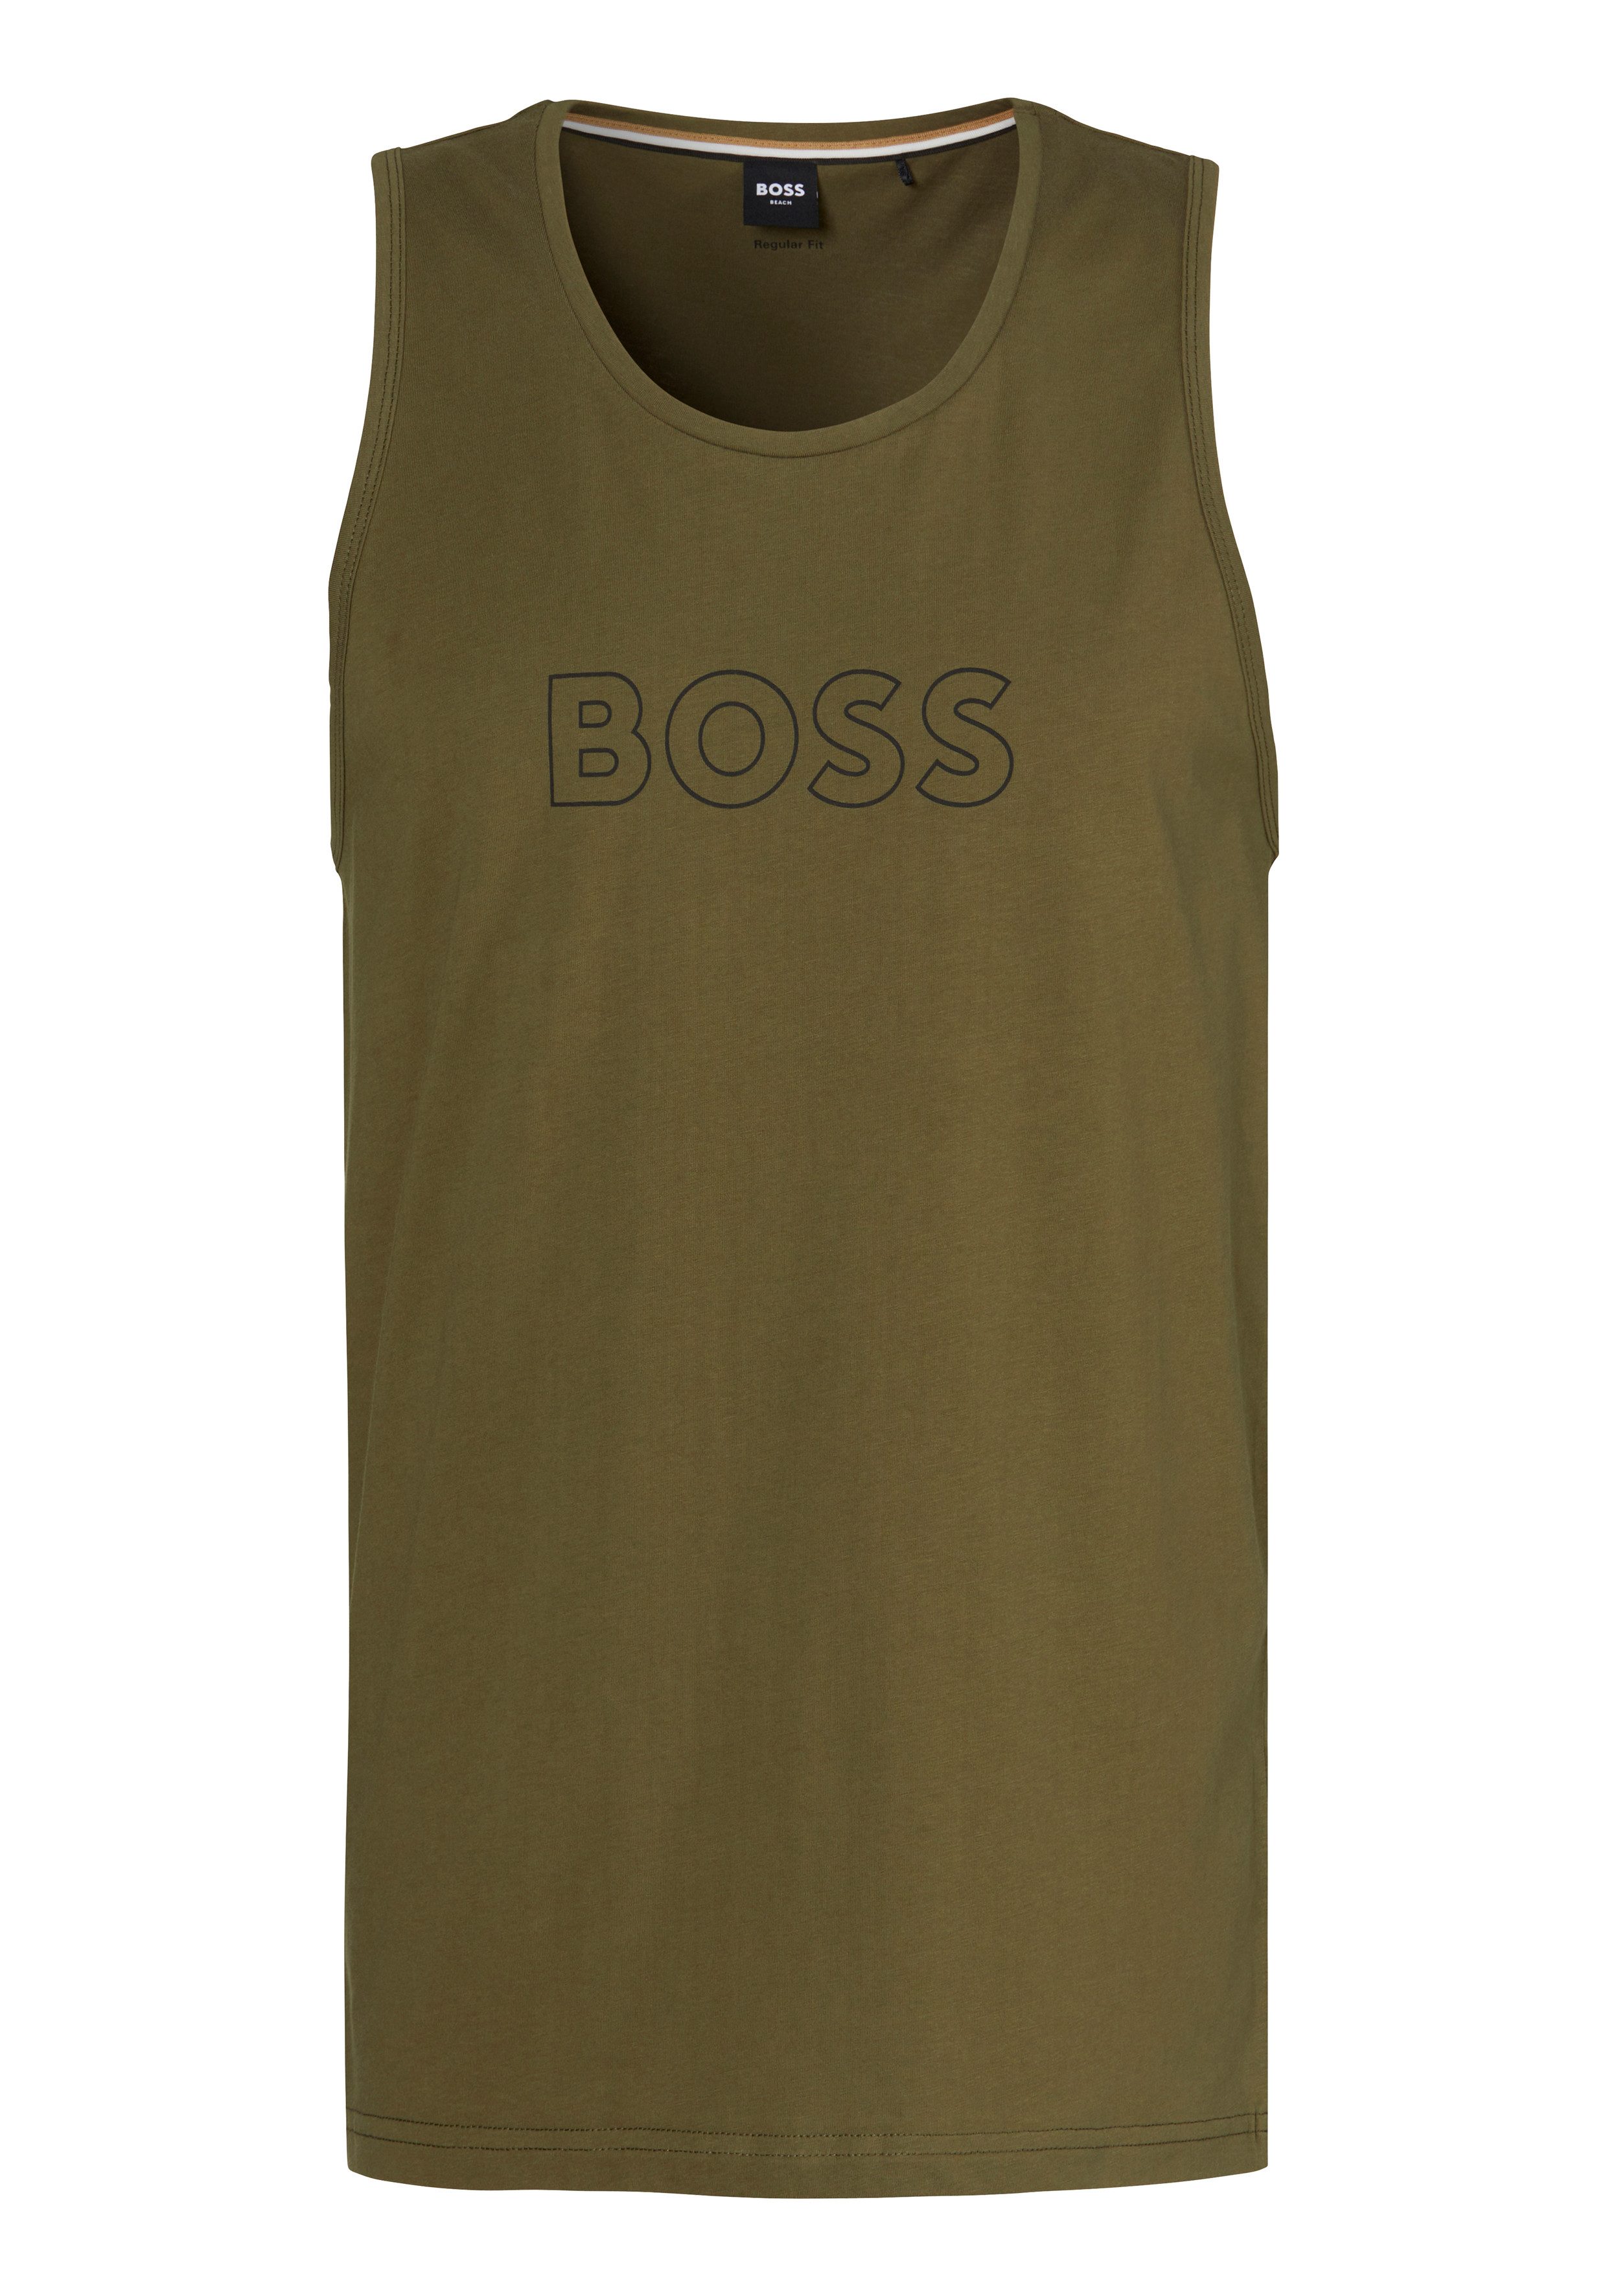 BOSS T-Shirt Beach Tank Top mit BOSS Aufdruck